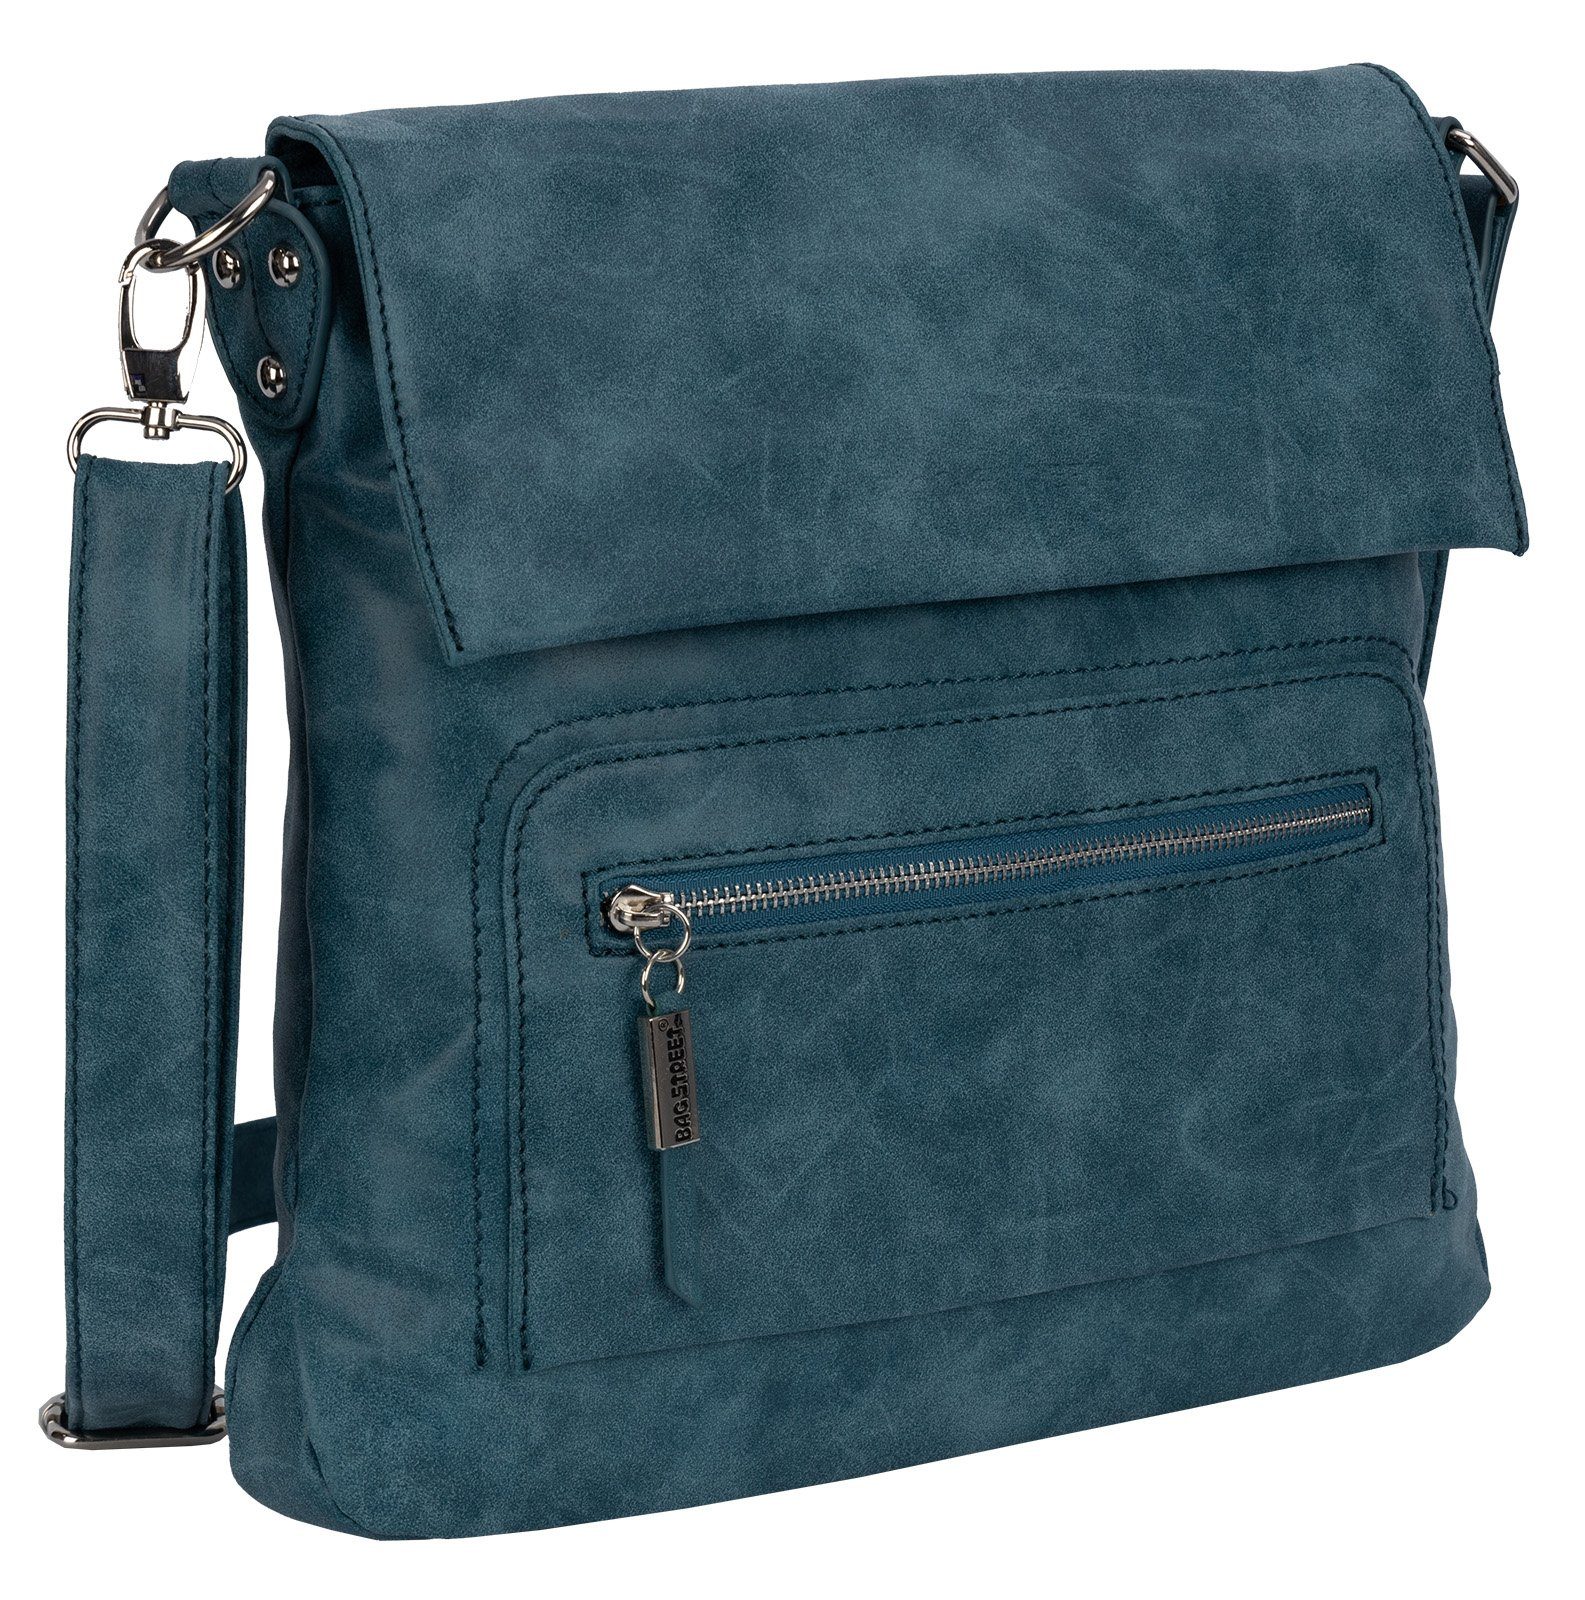 BAG STREET Schlüsseltasche Bag Street BLAU Damentasche als Handtasche Schultertasche, tragbar T0103, Umhängetasche Umhängetasche Schultertasche